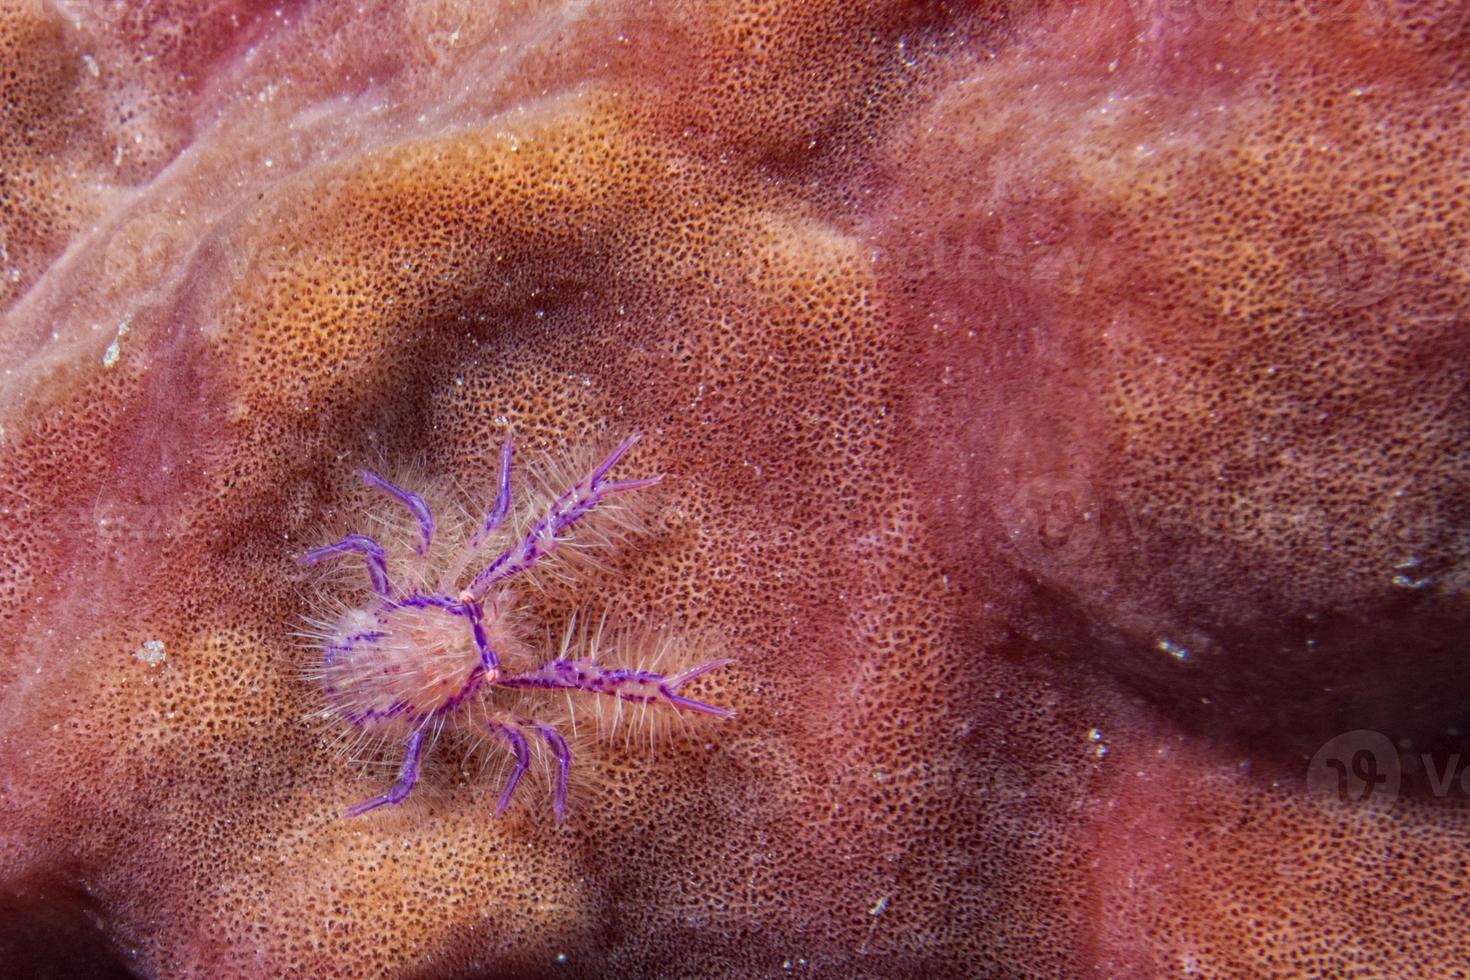 hårig krabba räka på röd svamp foto